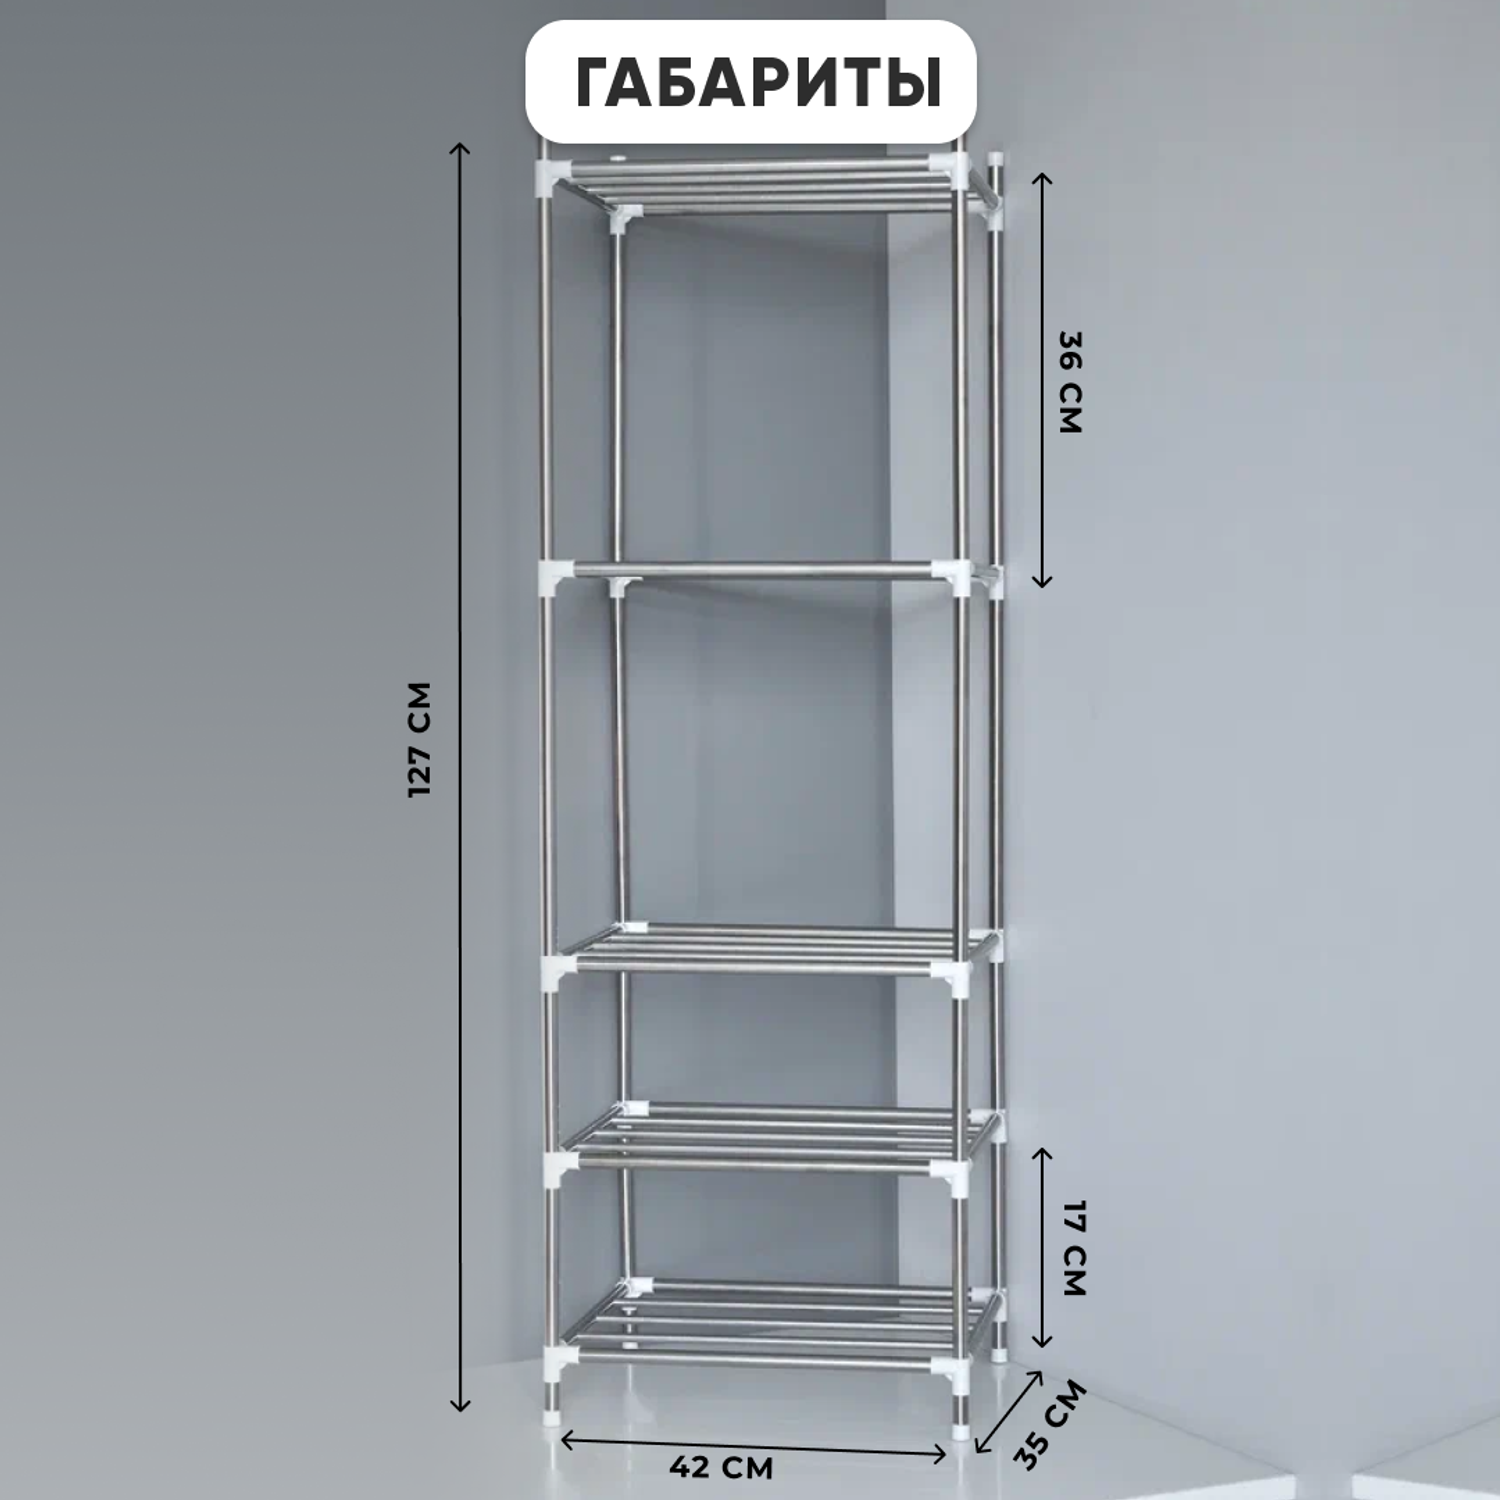 Стеллаж металлический oqqi этажерка для кухни - фото 8